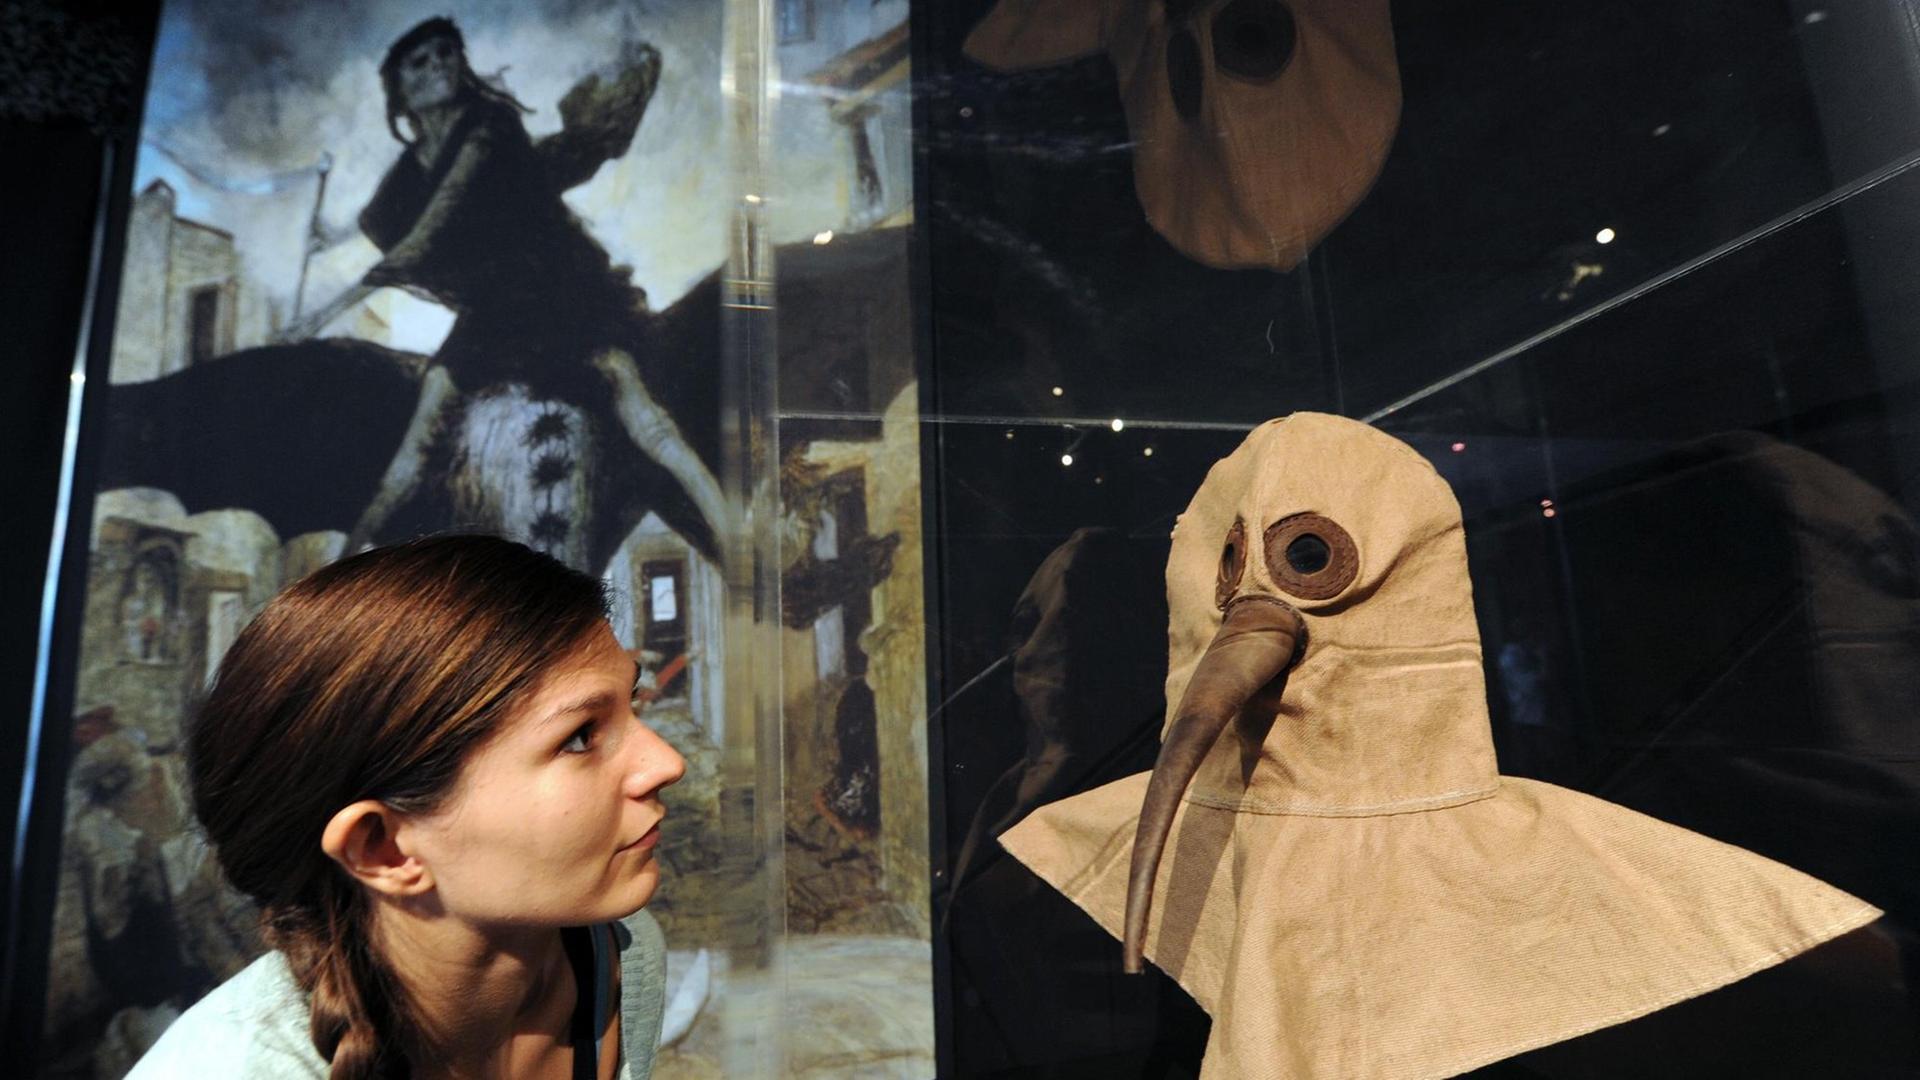 Eine Pestarzt-Maske, wie sie einst zum Schutz gegen die Seuche getragen wurde.